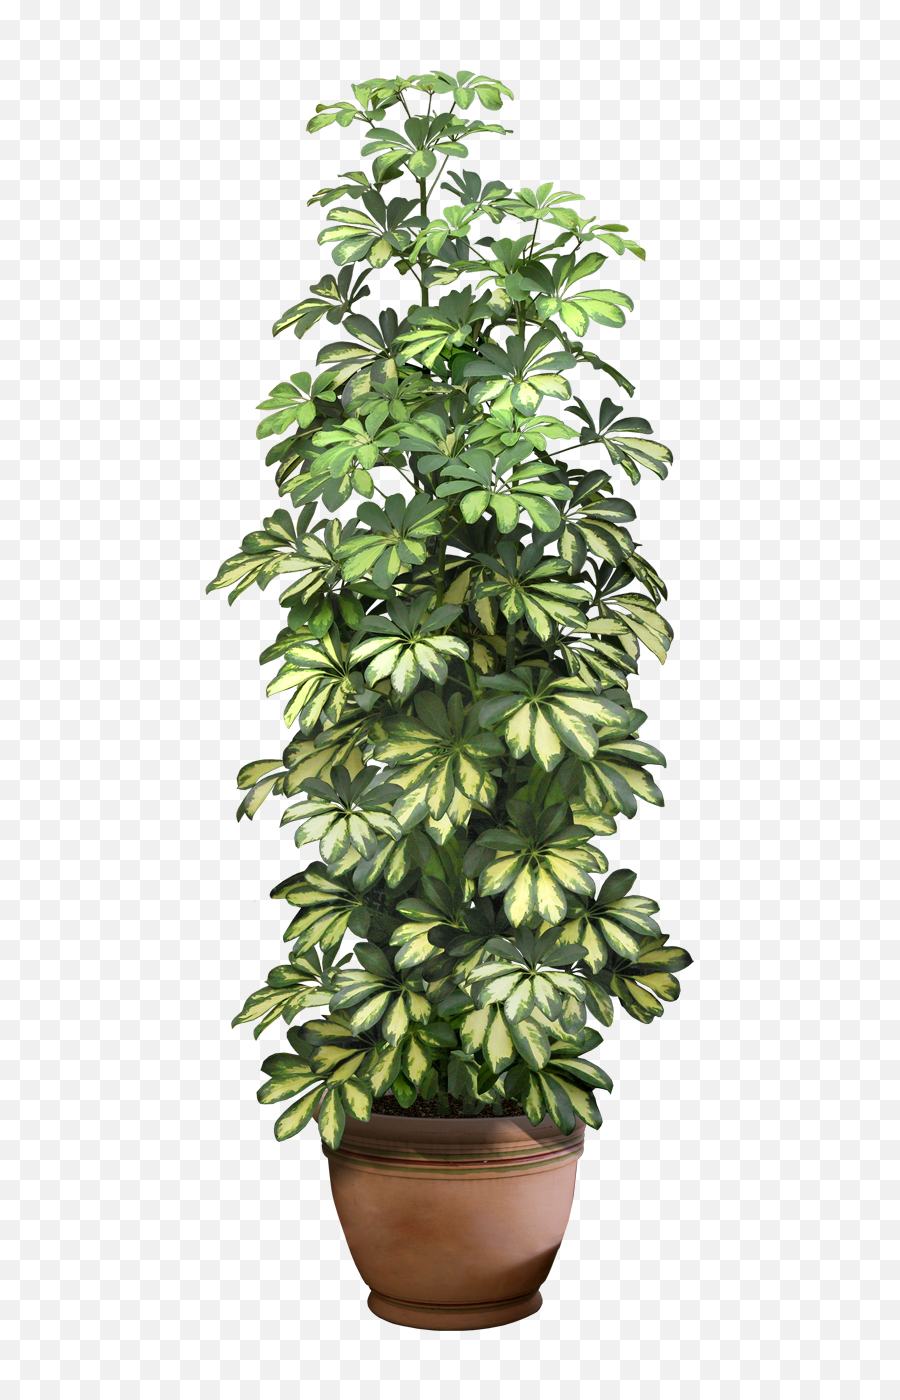 Download Hd 0 9ddb1 5c7a292c Xxl - Pot Plant Transparent Png Format Flower Pot Png,Plant Transparent Background